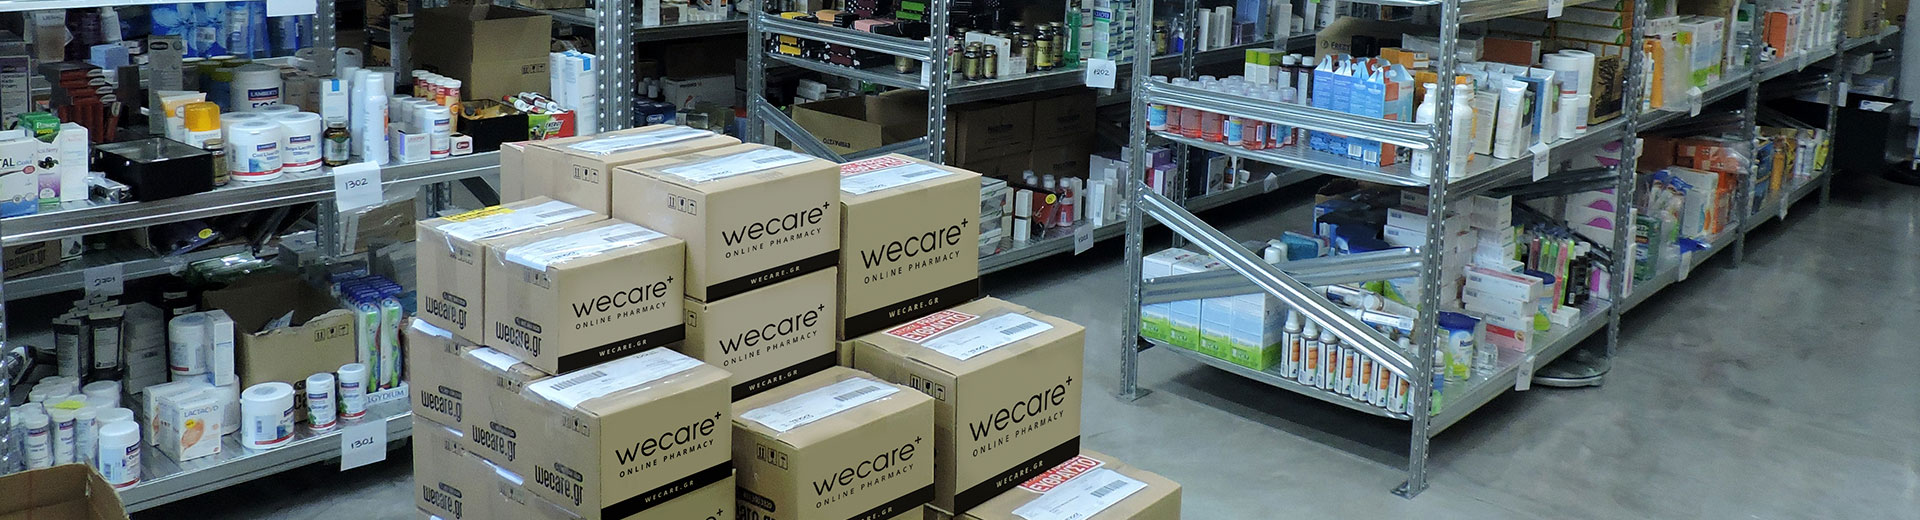 Wecare - Normes élevées de stockage et d'entretien des produits